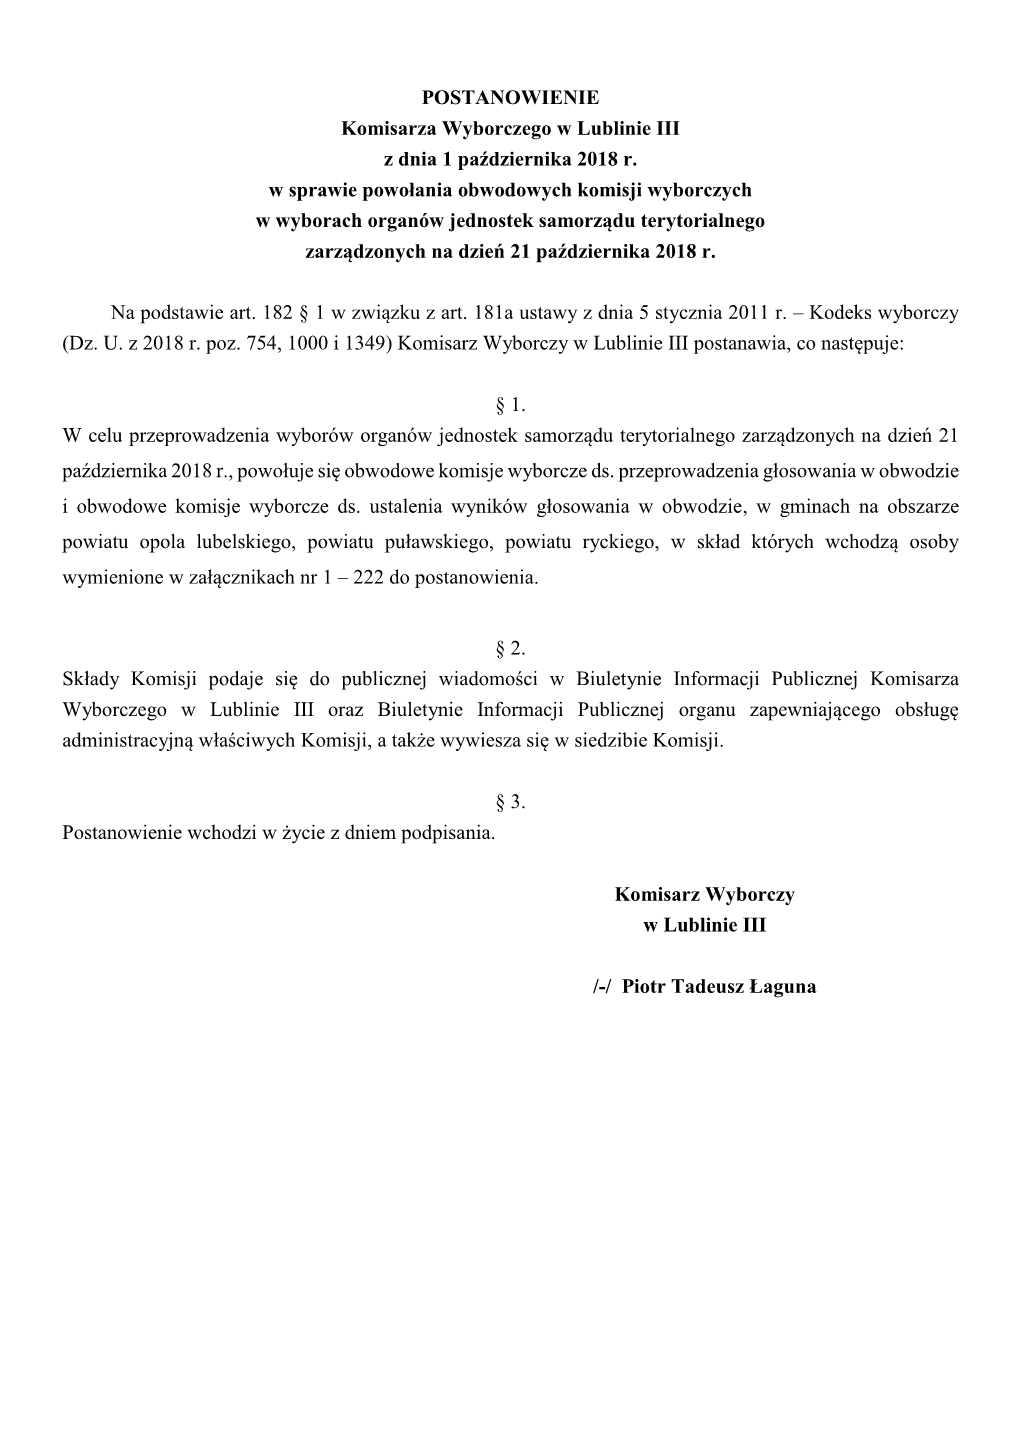 POSTANOWIENIE Komisarza Wyborczego W Lublinie III Z Dnia 1 Października 2018 R. W Sprawie Powołania Obwodowych Komisji Wyborcz